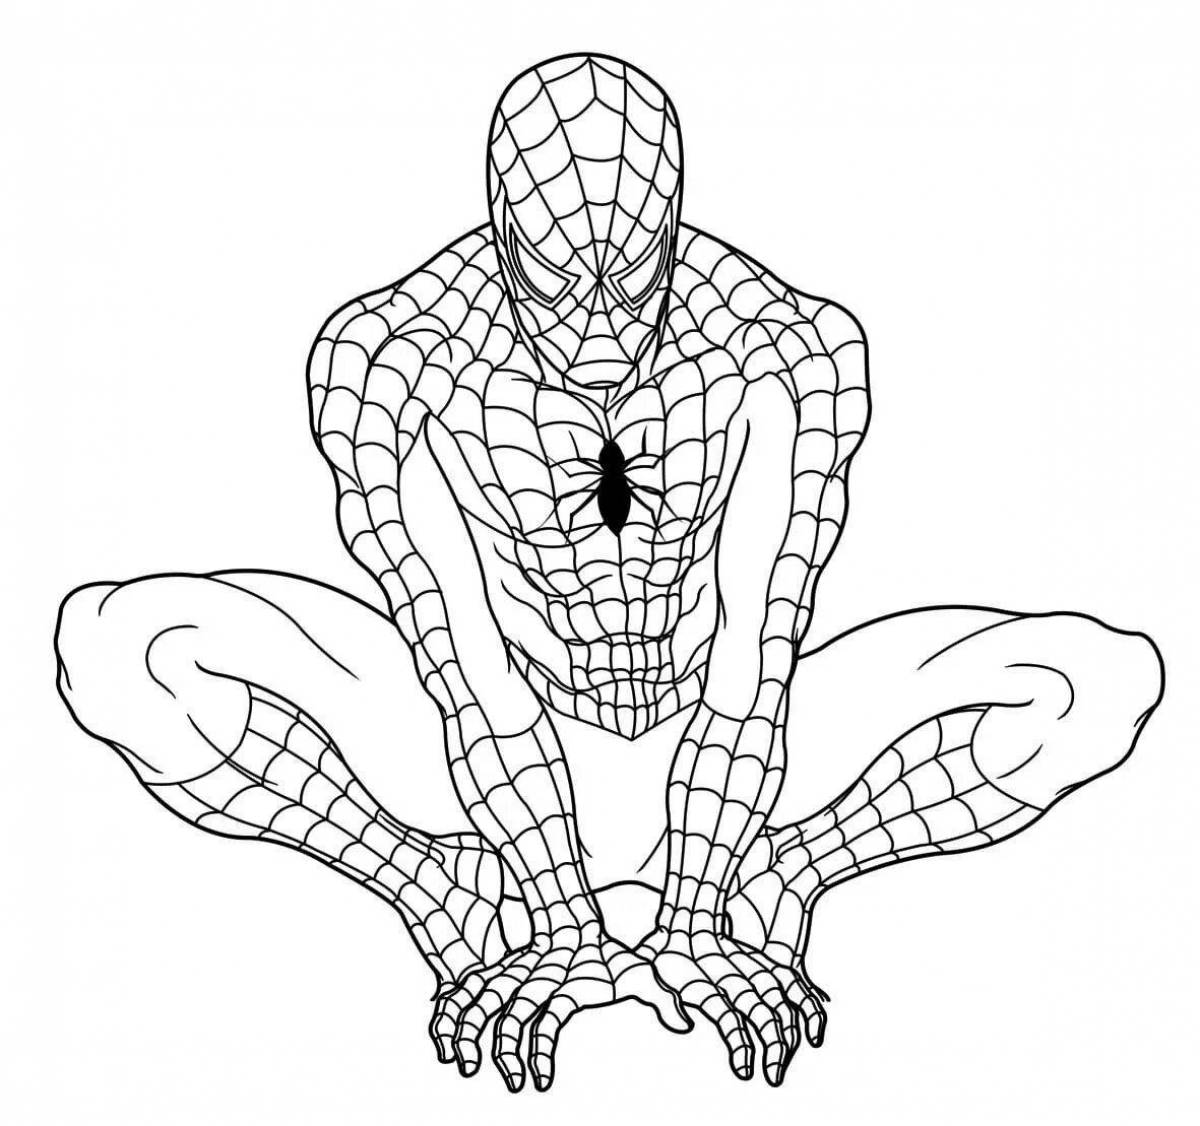 Художественно детализированная страница раскраски человек-паук